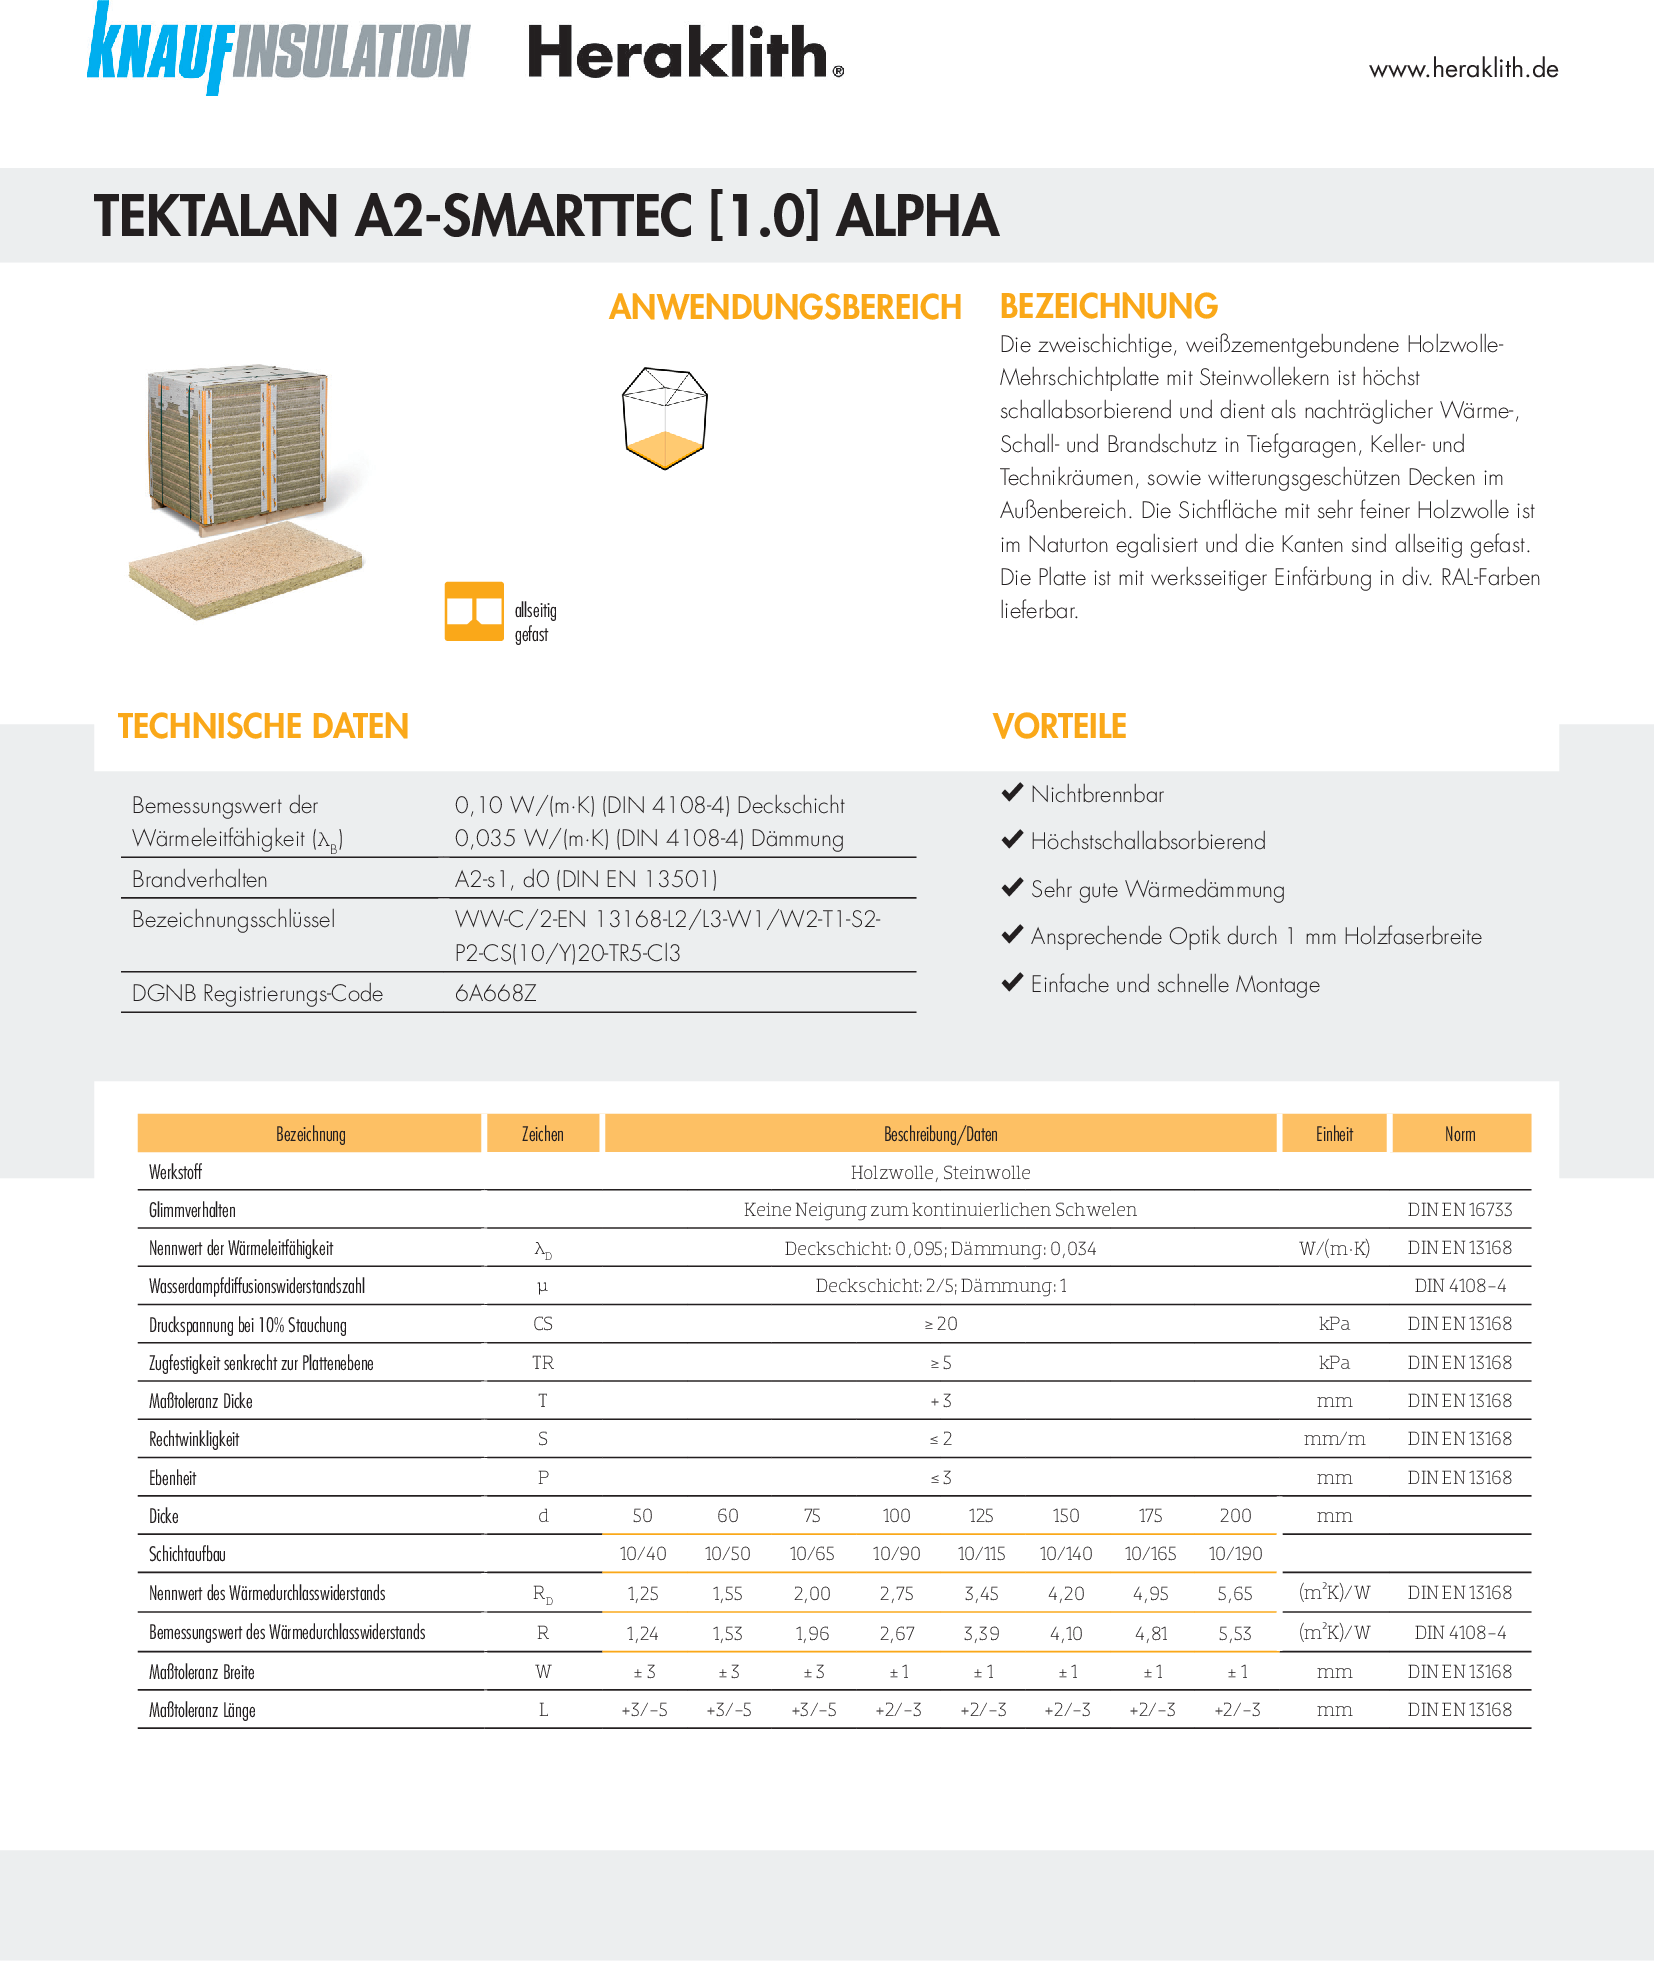 Datenblatt Tektalan A2-SmartTec [1.0] alpha